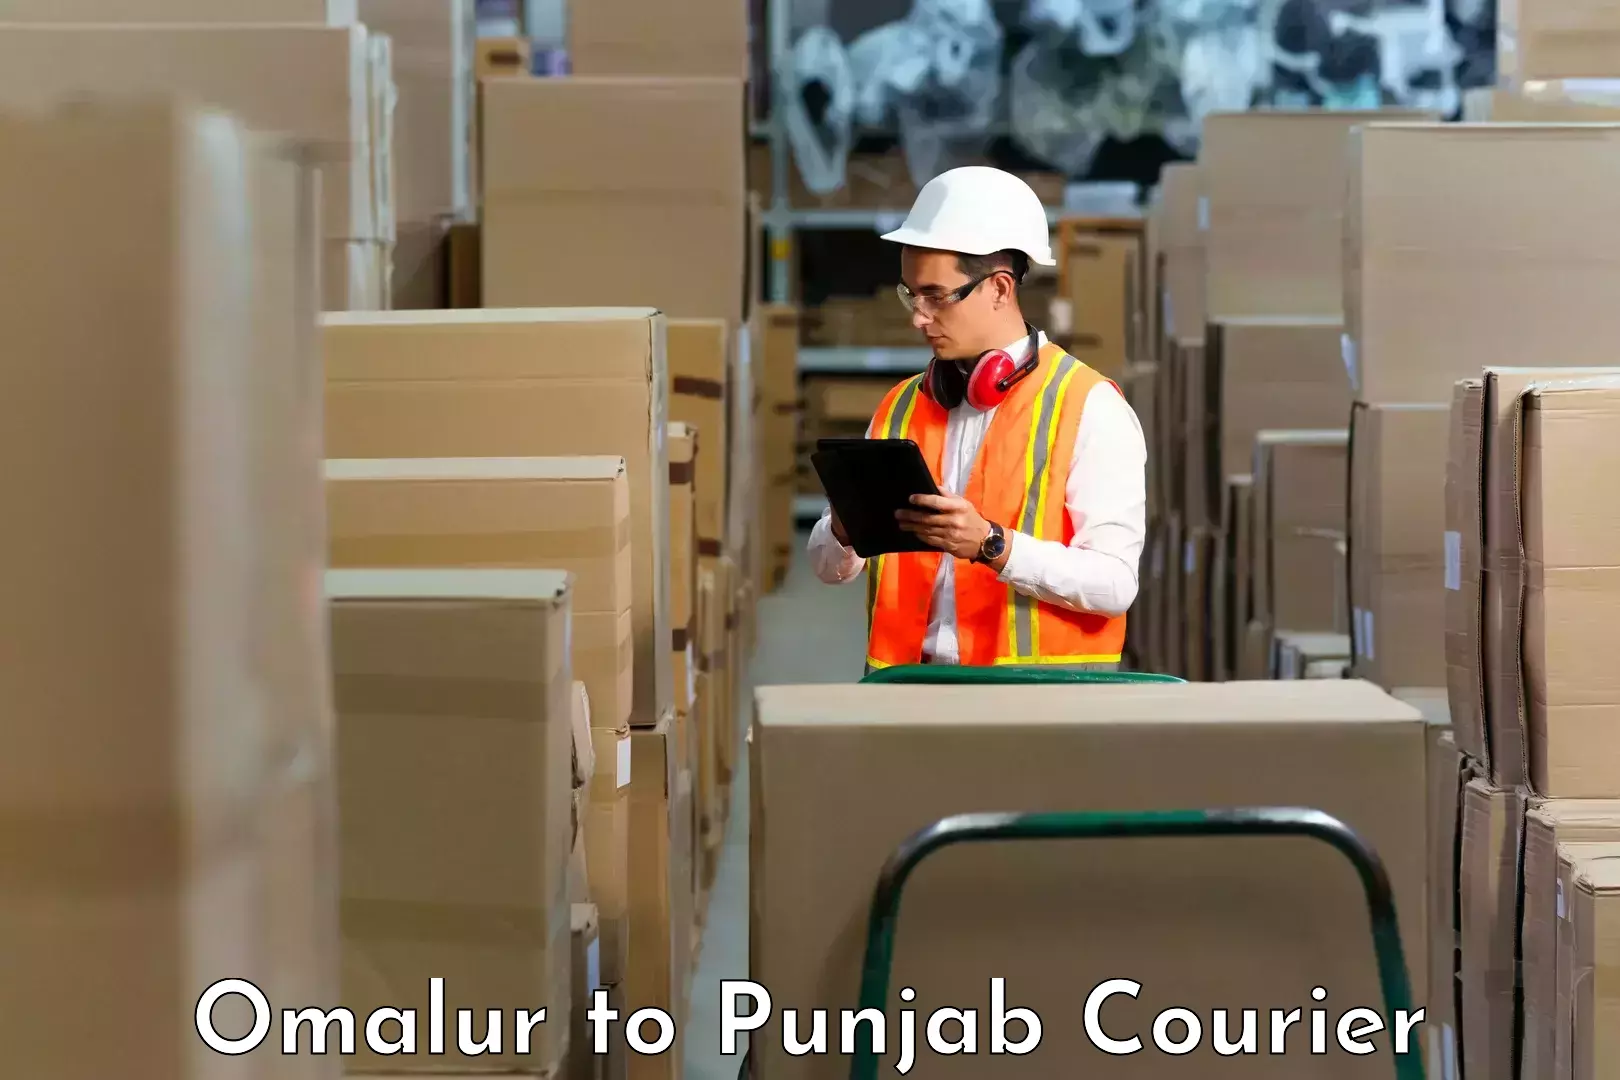 Efficient parcel service Omalur to Punjab